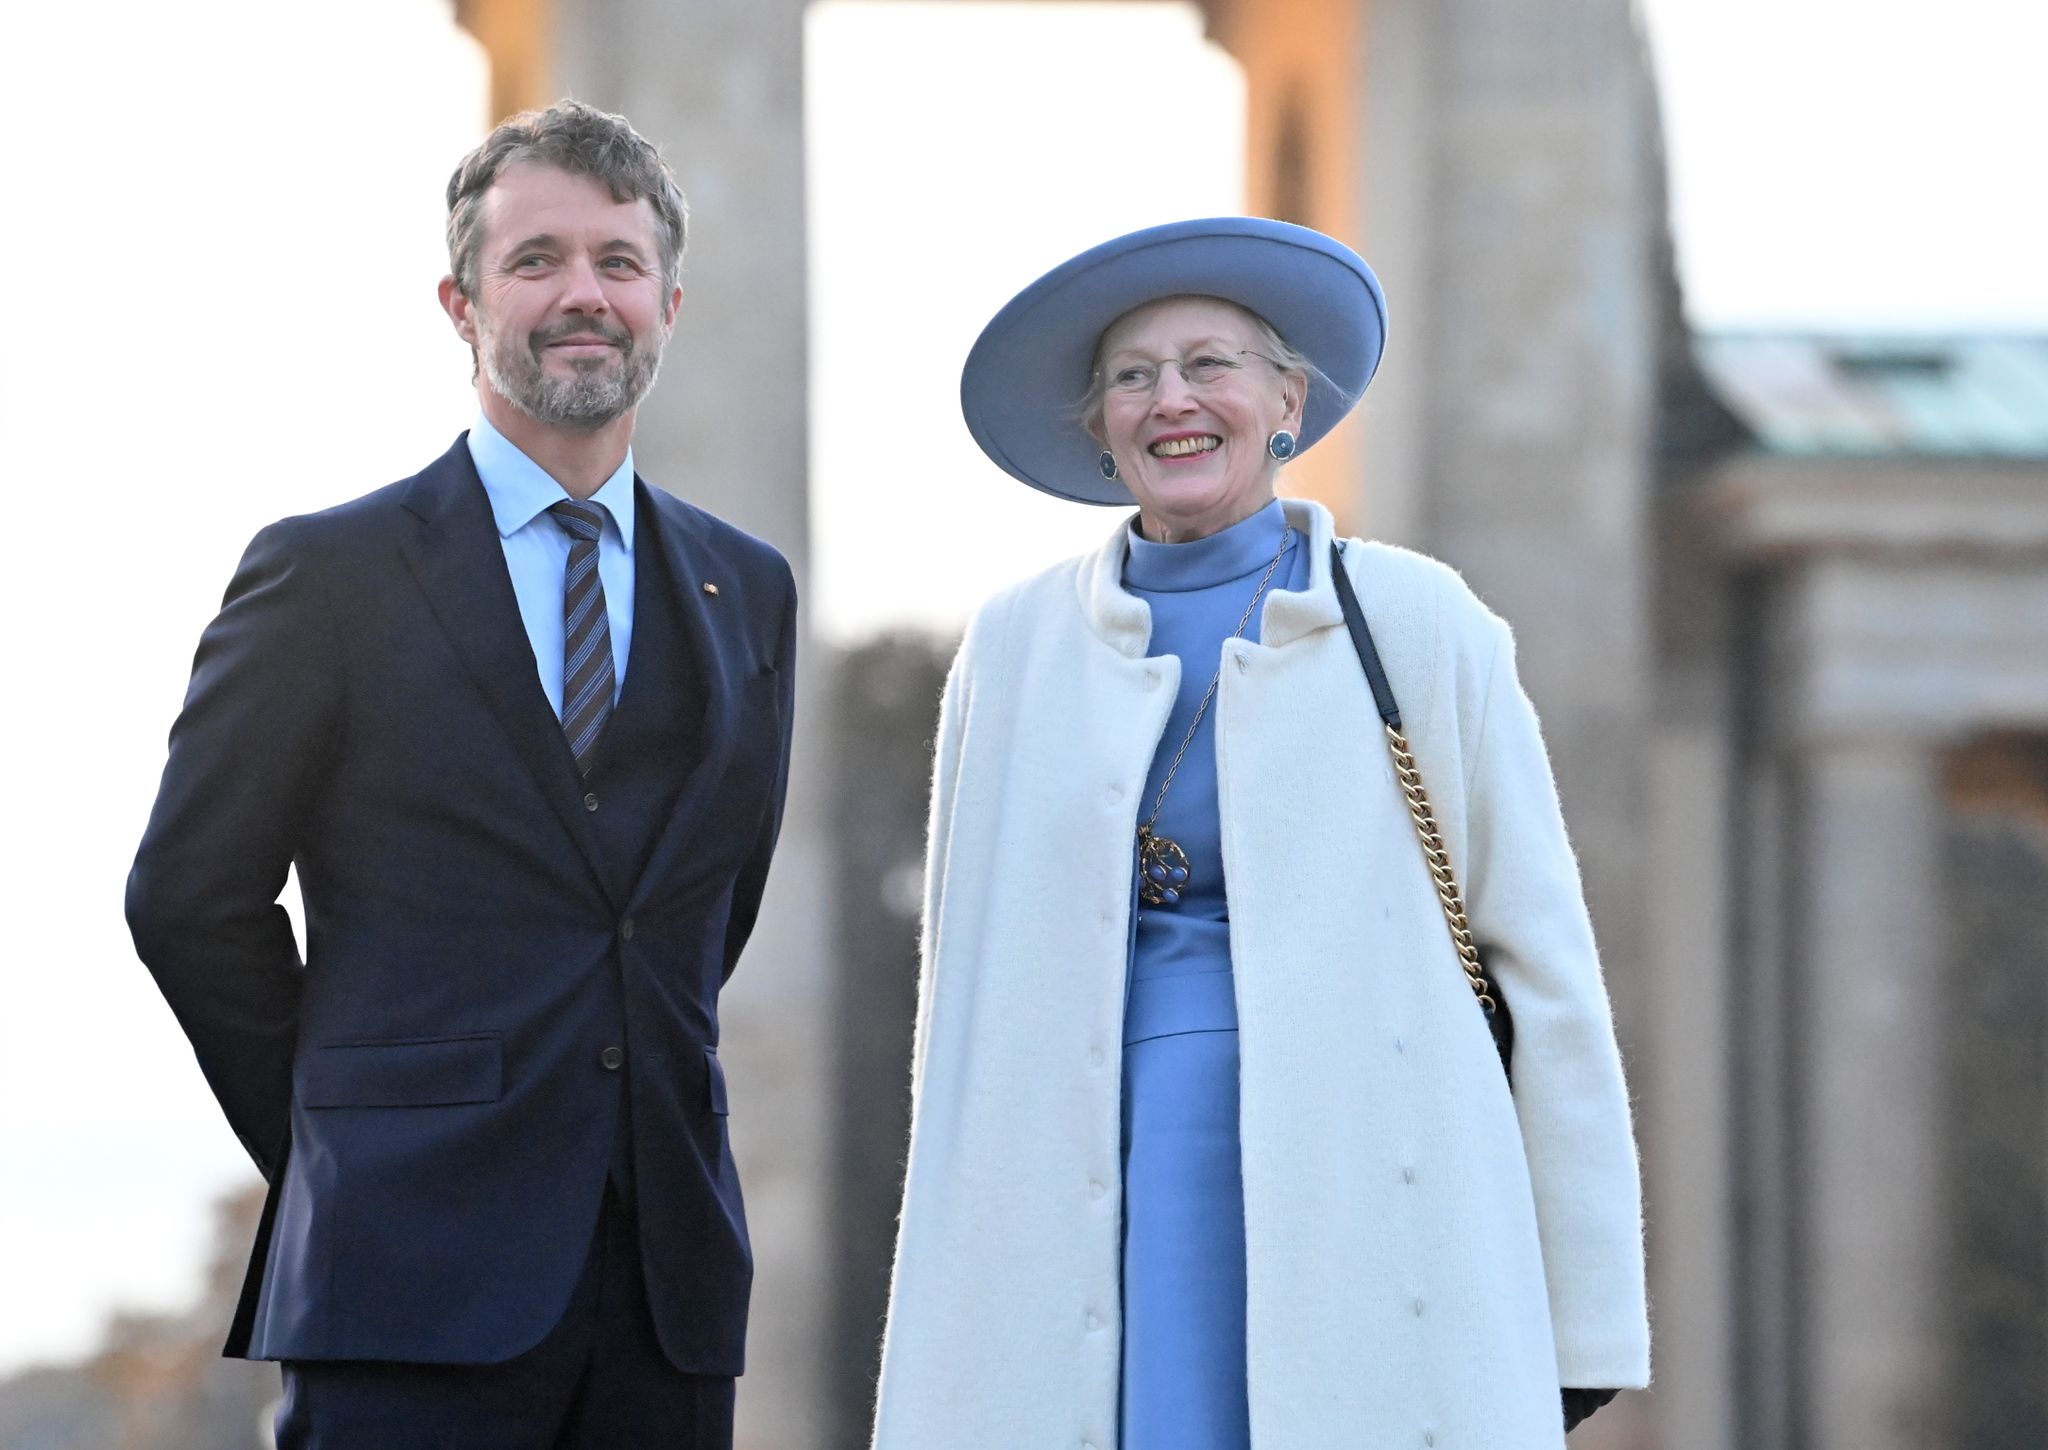 Königin Margrethe II. von Dänemark will den Thron ihrem Sohn, Kronprinz Frederik, überlassen. Foto: Bernd von Jutrczenka/Deutsche Presse-Agentur GmbH/dpa